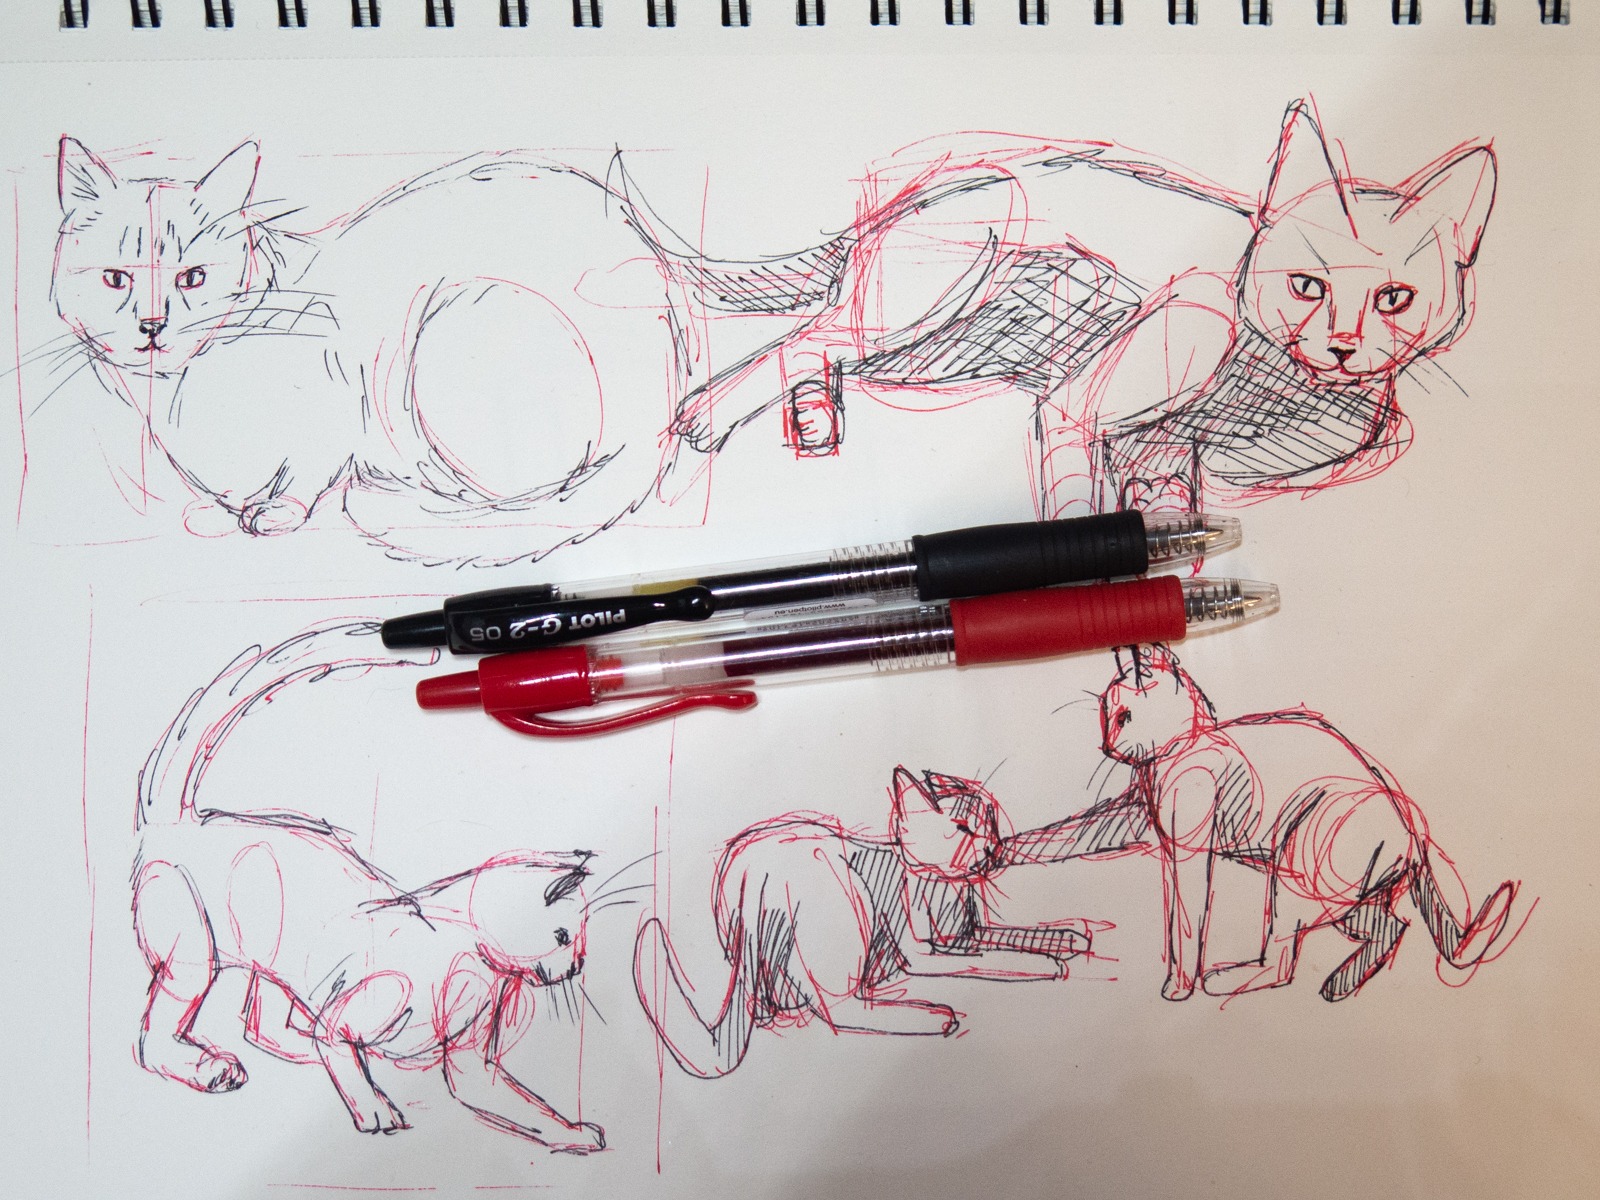 nauka rysowania szkice długopis żelowy pilot g2 rysunek kota bryły proporcje